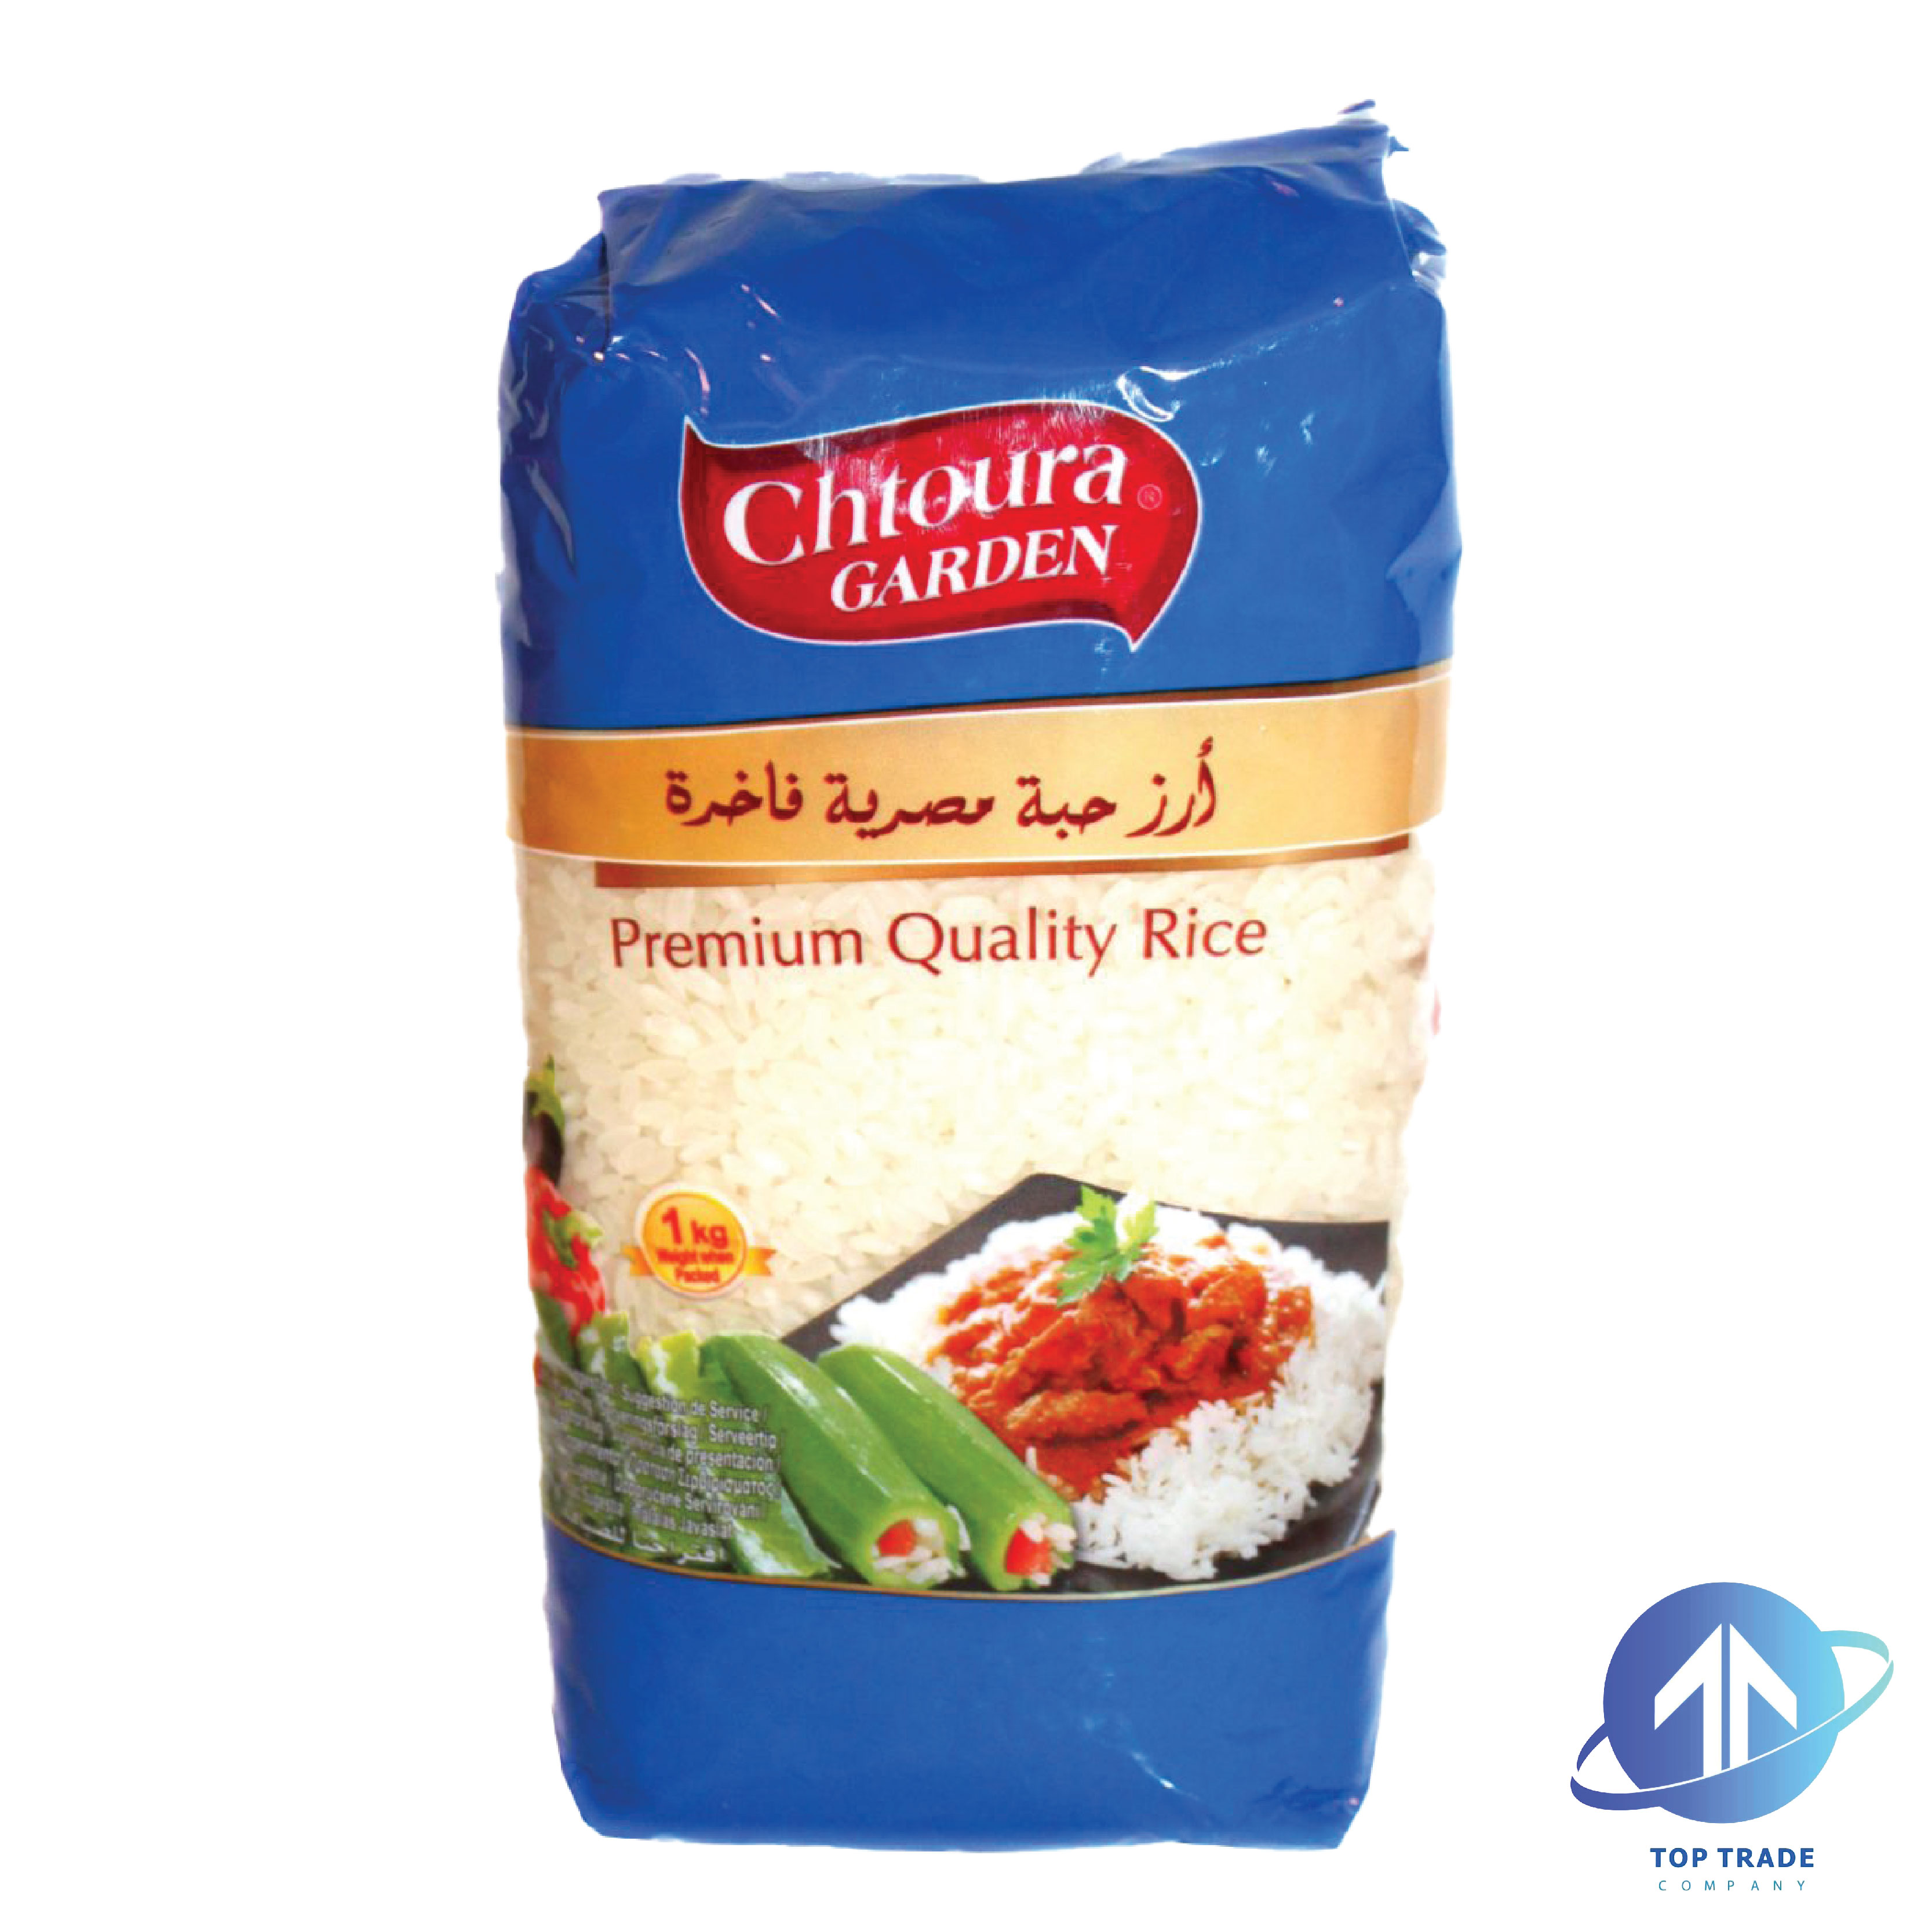 Chtoura garden Egyptian Rice Long Grain 1KG